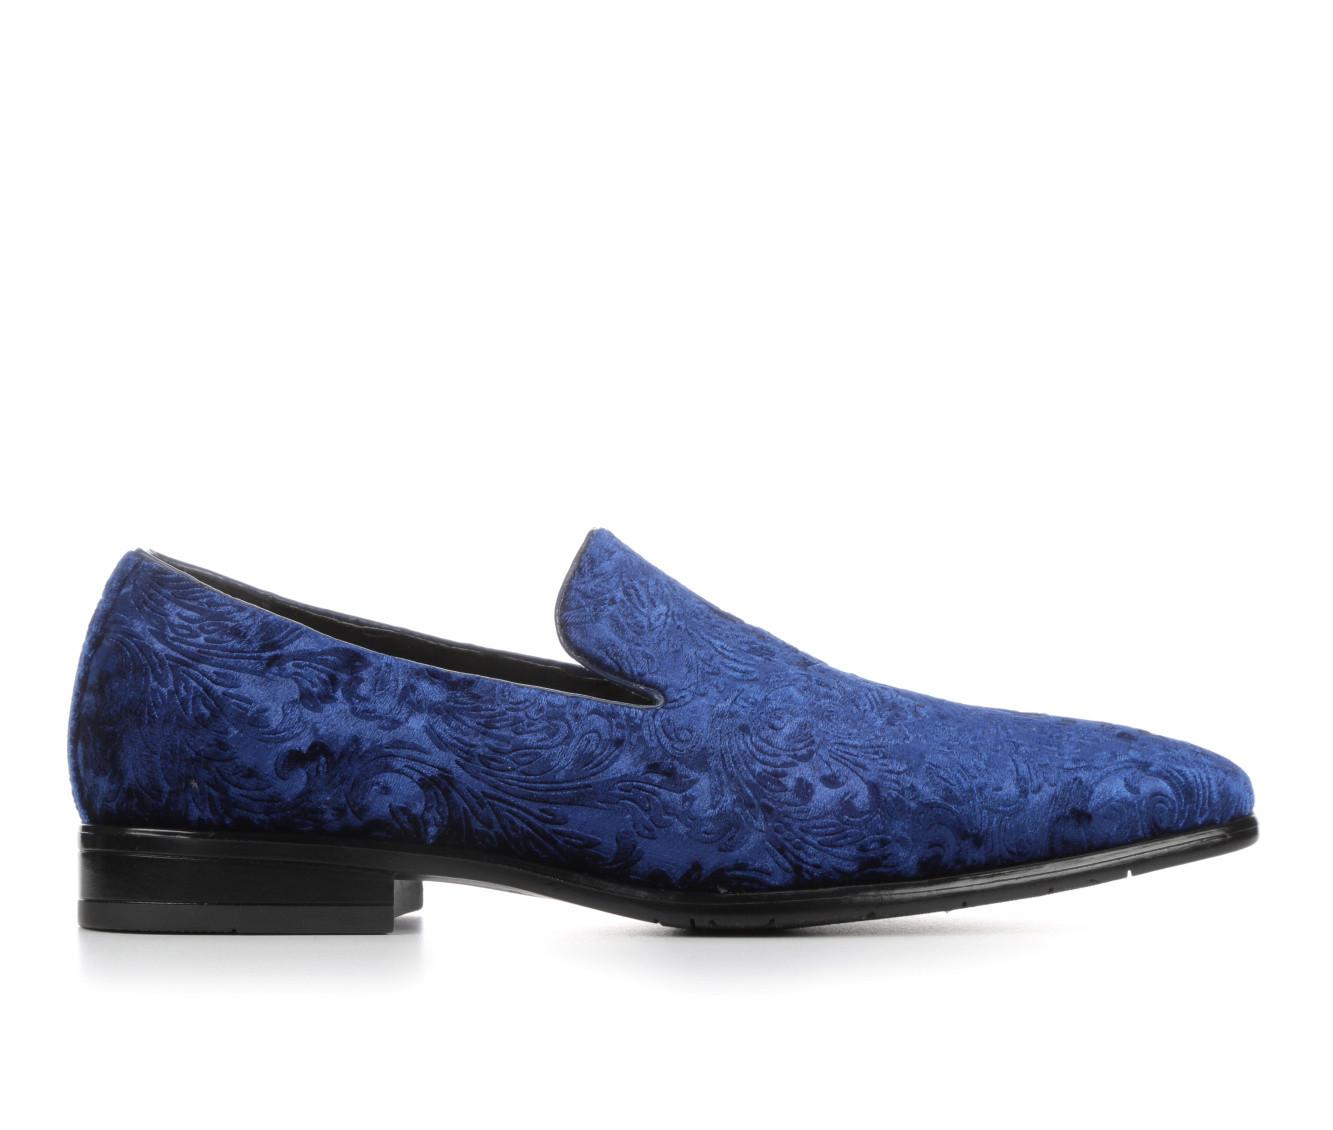 Men's Giorgio Brutini Weaver Dress Shoes